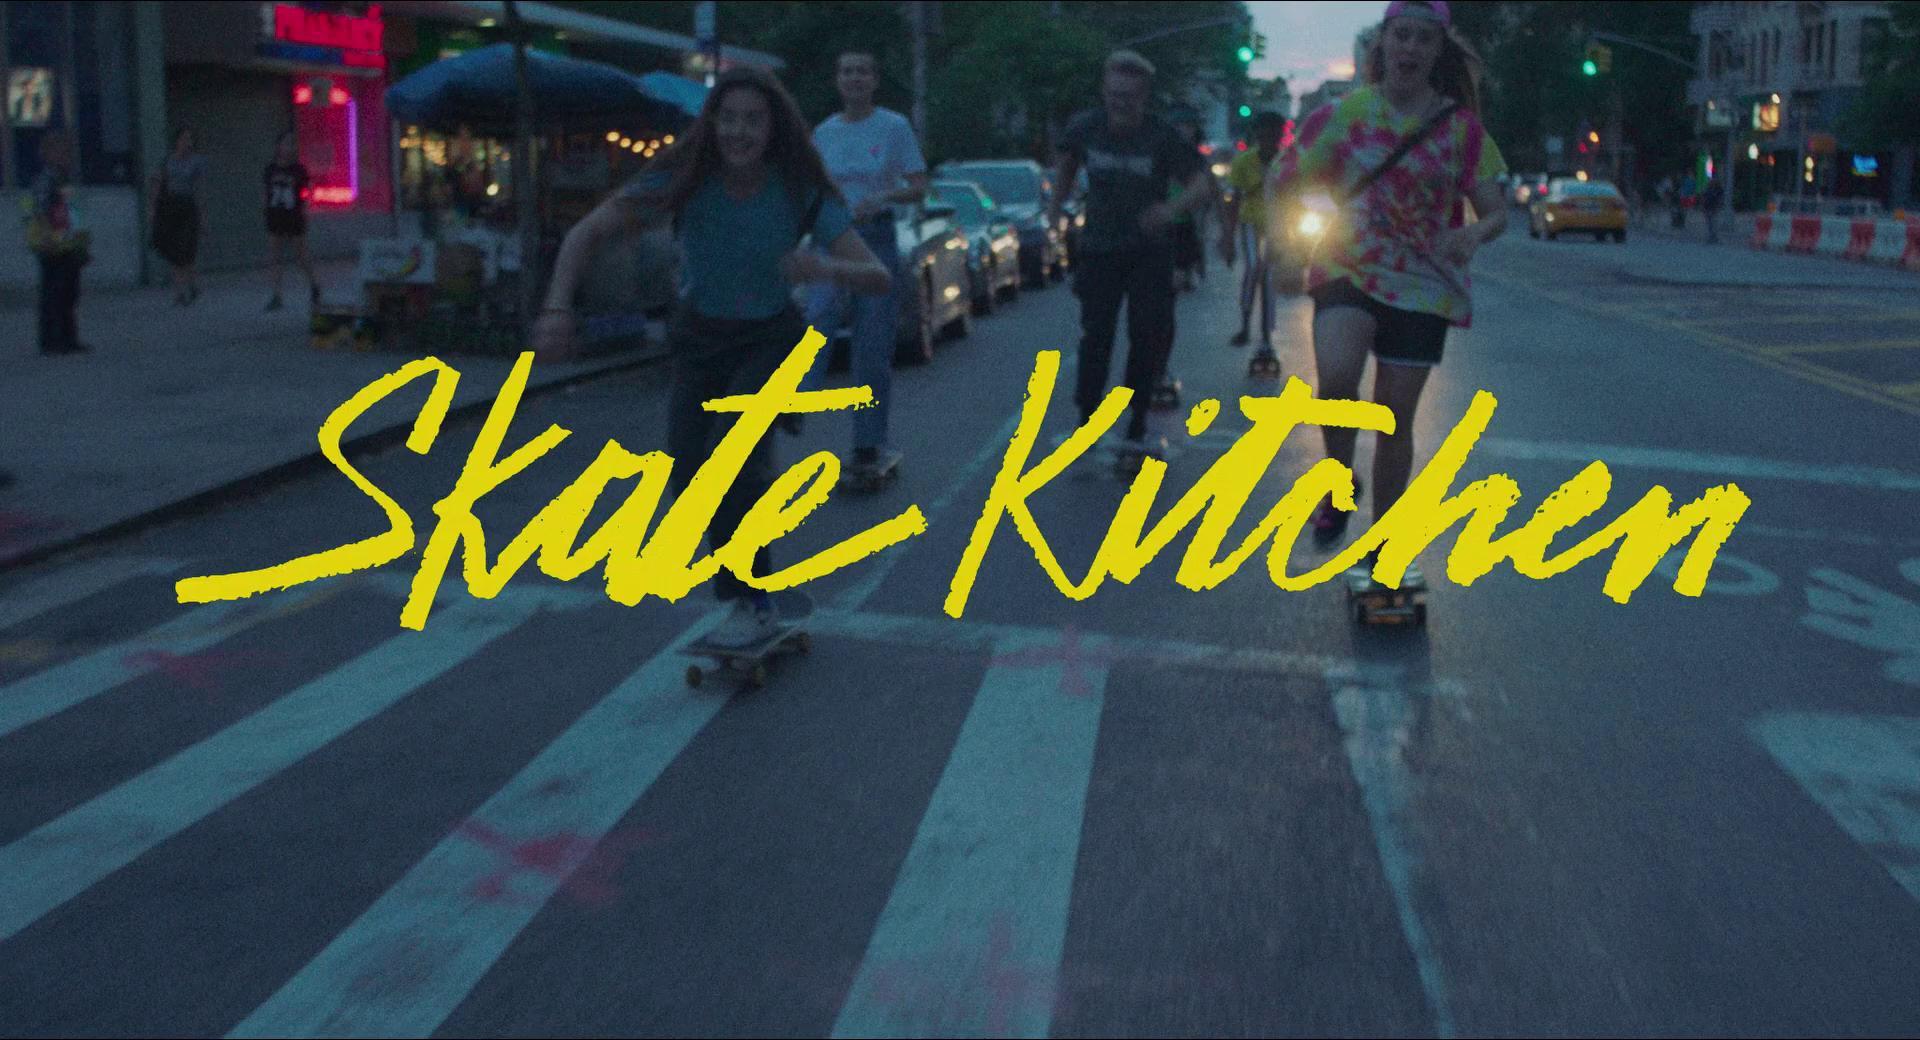 skate kitchen movie download